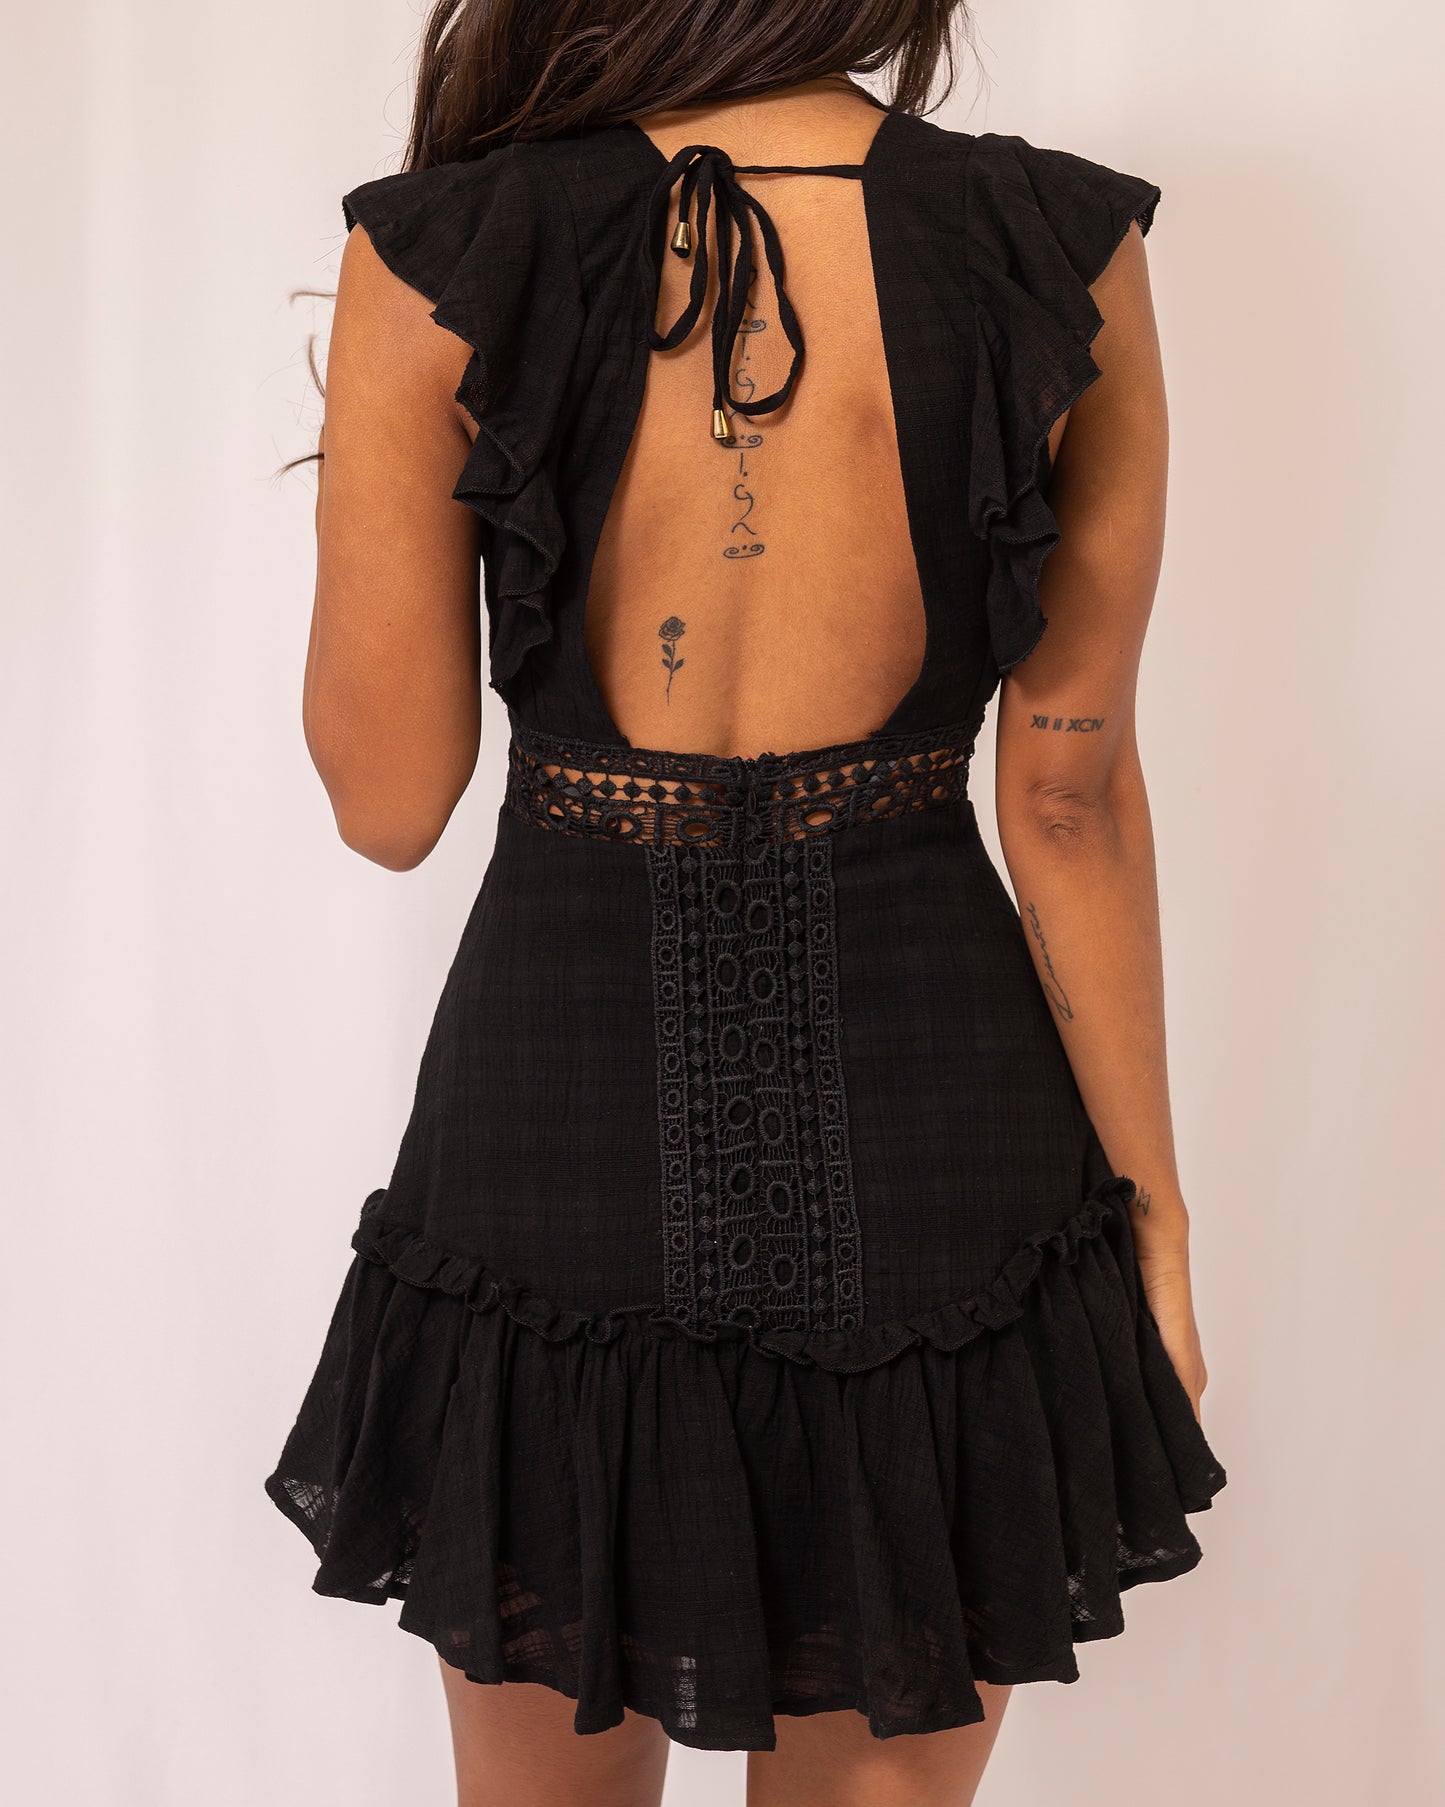 Elegant Black Lace Ruffle Deep V-Neck Dress with Band Sleeve Detailed